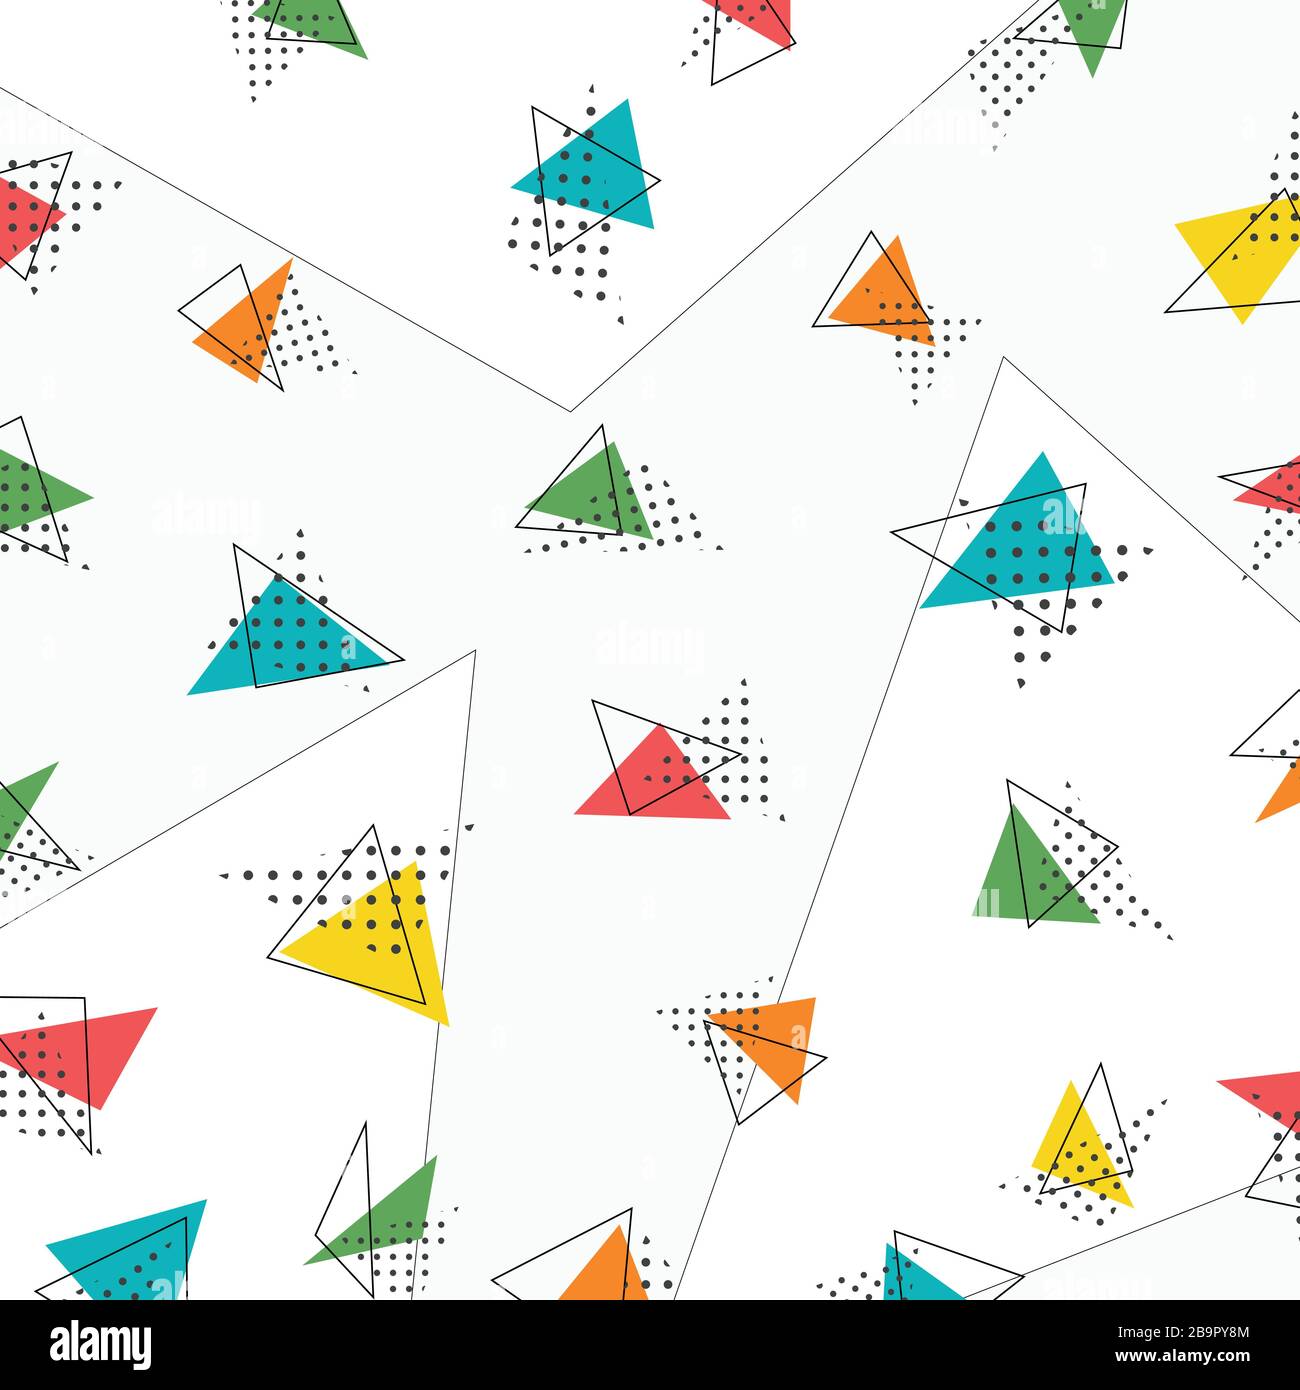 Abstraktes Dreiecksmuster im Grafikdesign. Verwendung für Werbung, Poster, Grafiken, Vorlagen, Cover. Illustration Vector eps10 Stock Vektor